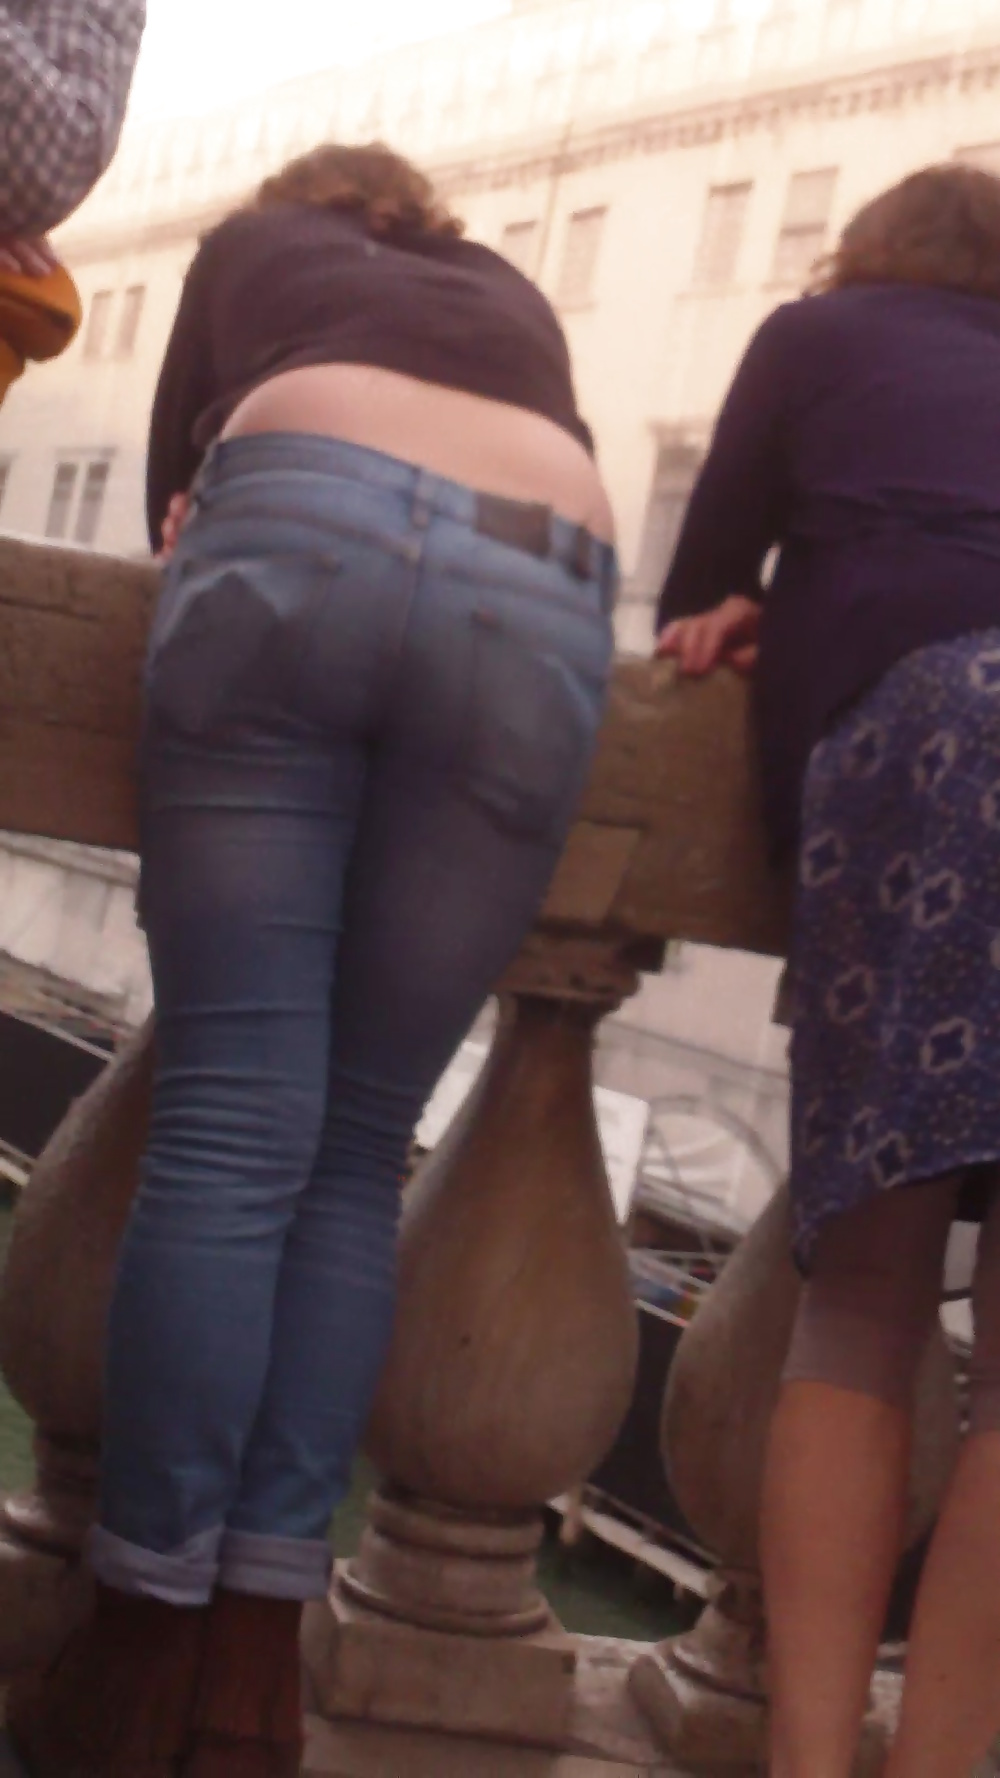 Popular teen girls ass & butt in jeans Part 6 #32009854